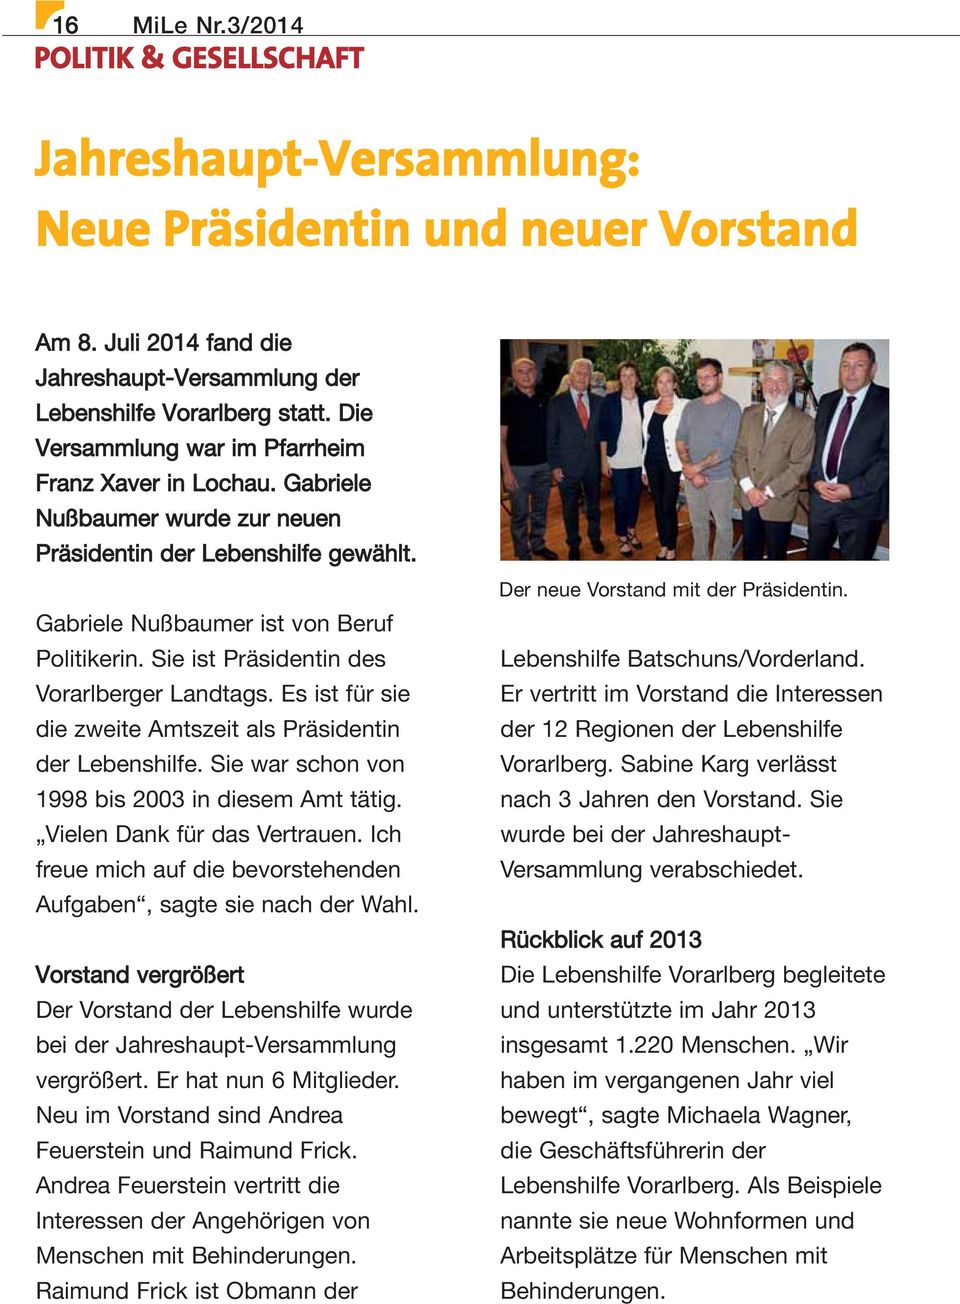 Sie ist Präsidentin des Vorarlberger Landtags. Es ist für sie die zweite Amtszeit als Präsidentin der Lebenshilfe. Sie war schon von 1998 bis 2003 in diesem Amt tätig. Vielen Dank für das Vertrauen.